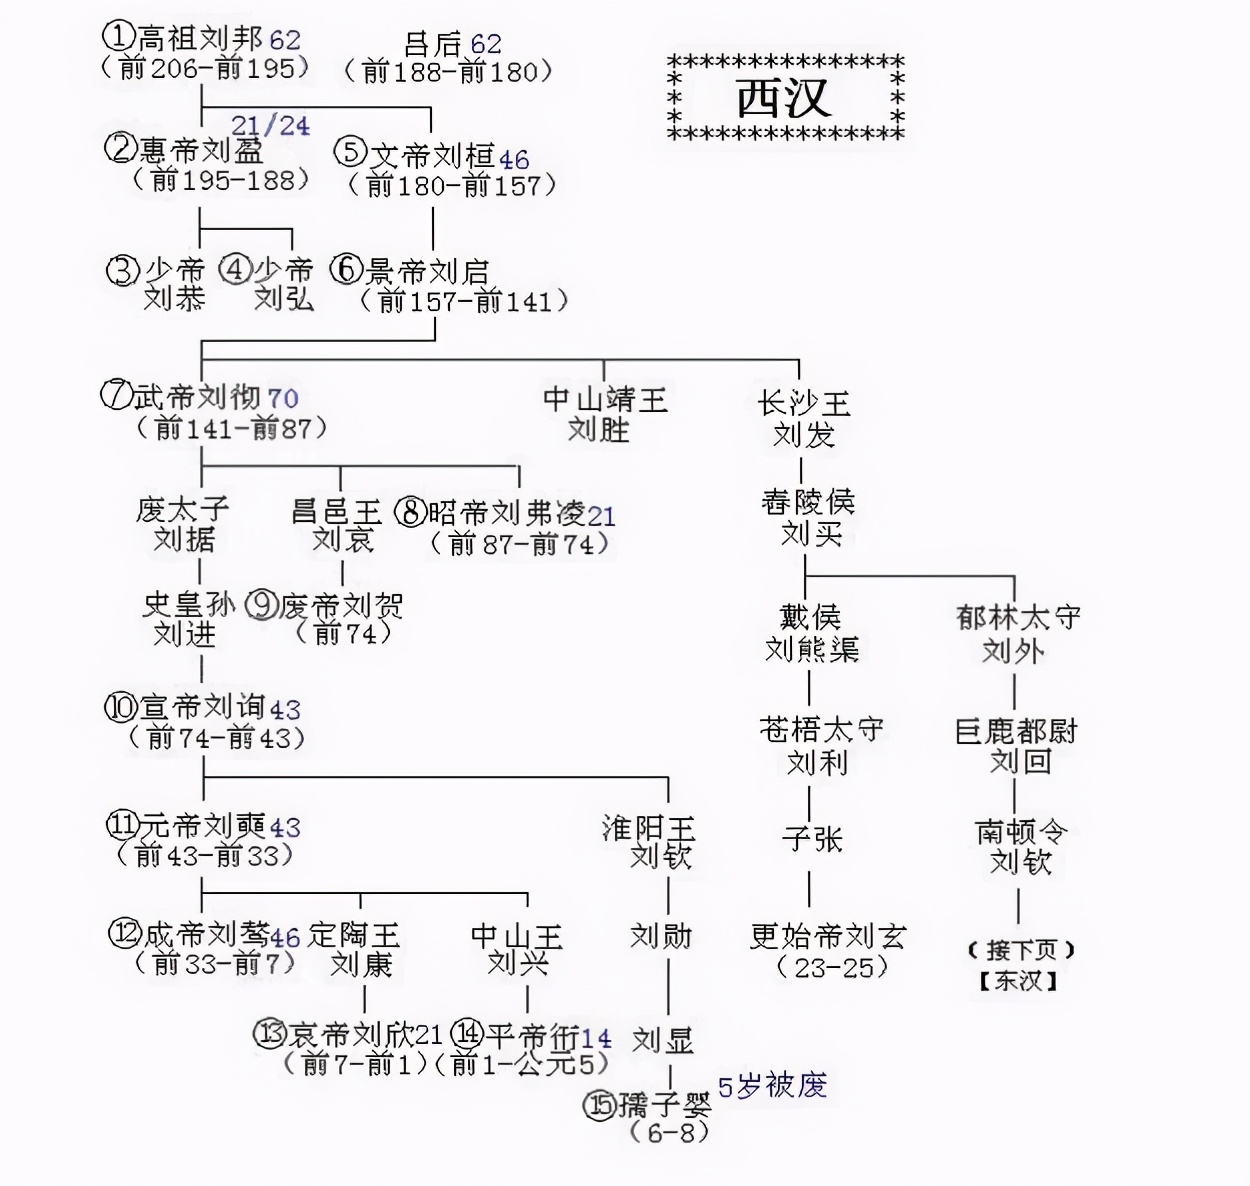 刘邦家族世系表图片